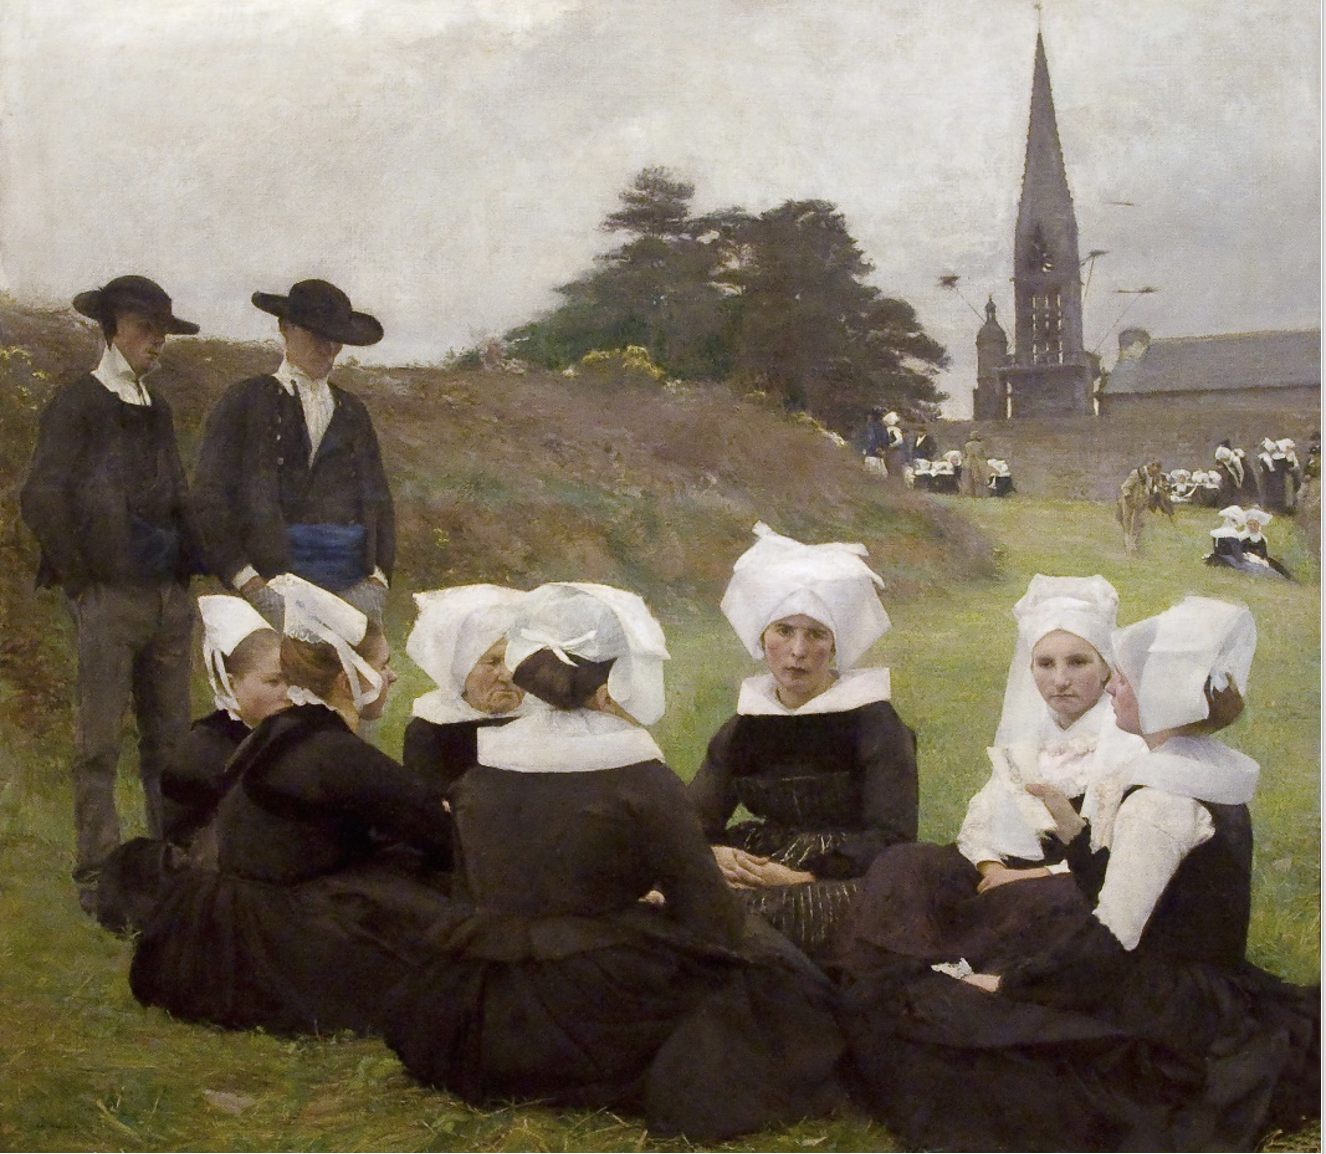 Dagnan-Bouveret, Les Bretonnes au Pardon, 1887, huile sur toile, 125 x 141 cm, Lisbonne, Fondation Gulbenkian © archives de l'expert